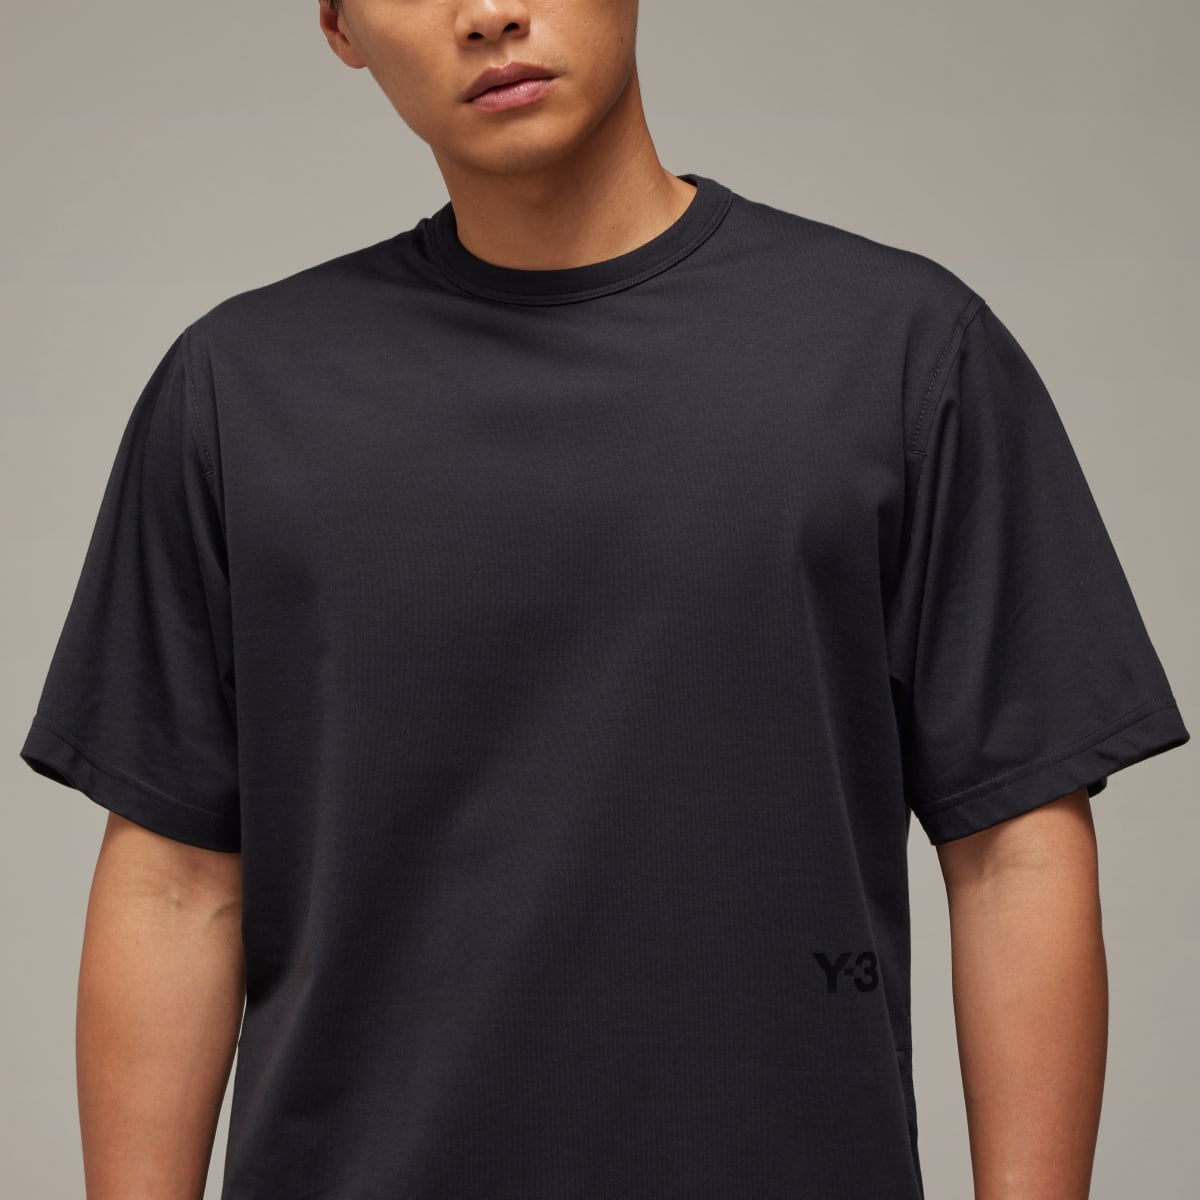 Adidas Koszulka Y-3 Premium Short Sleeve. 8